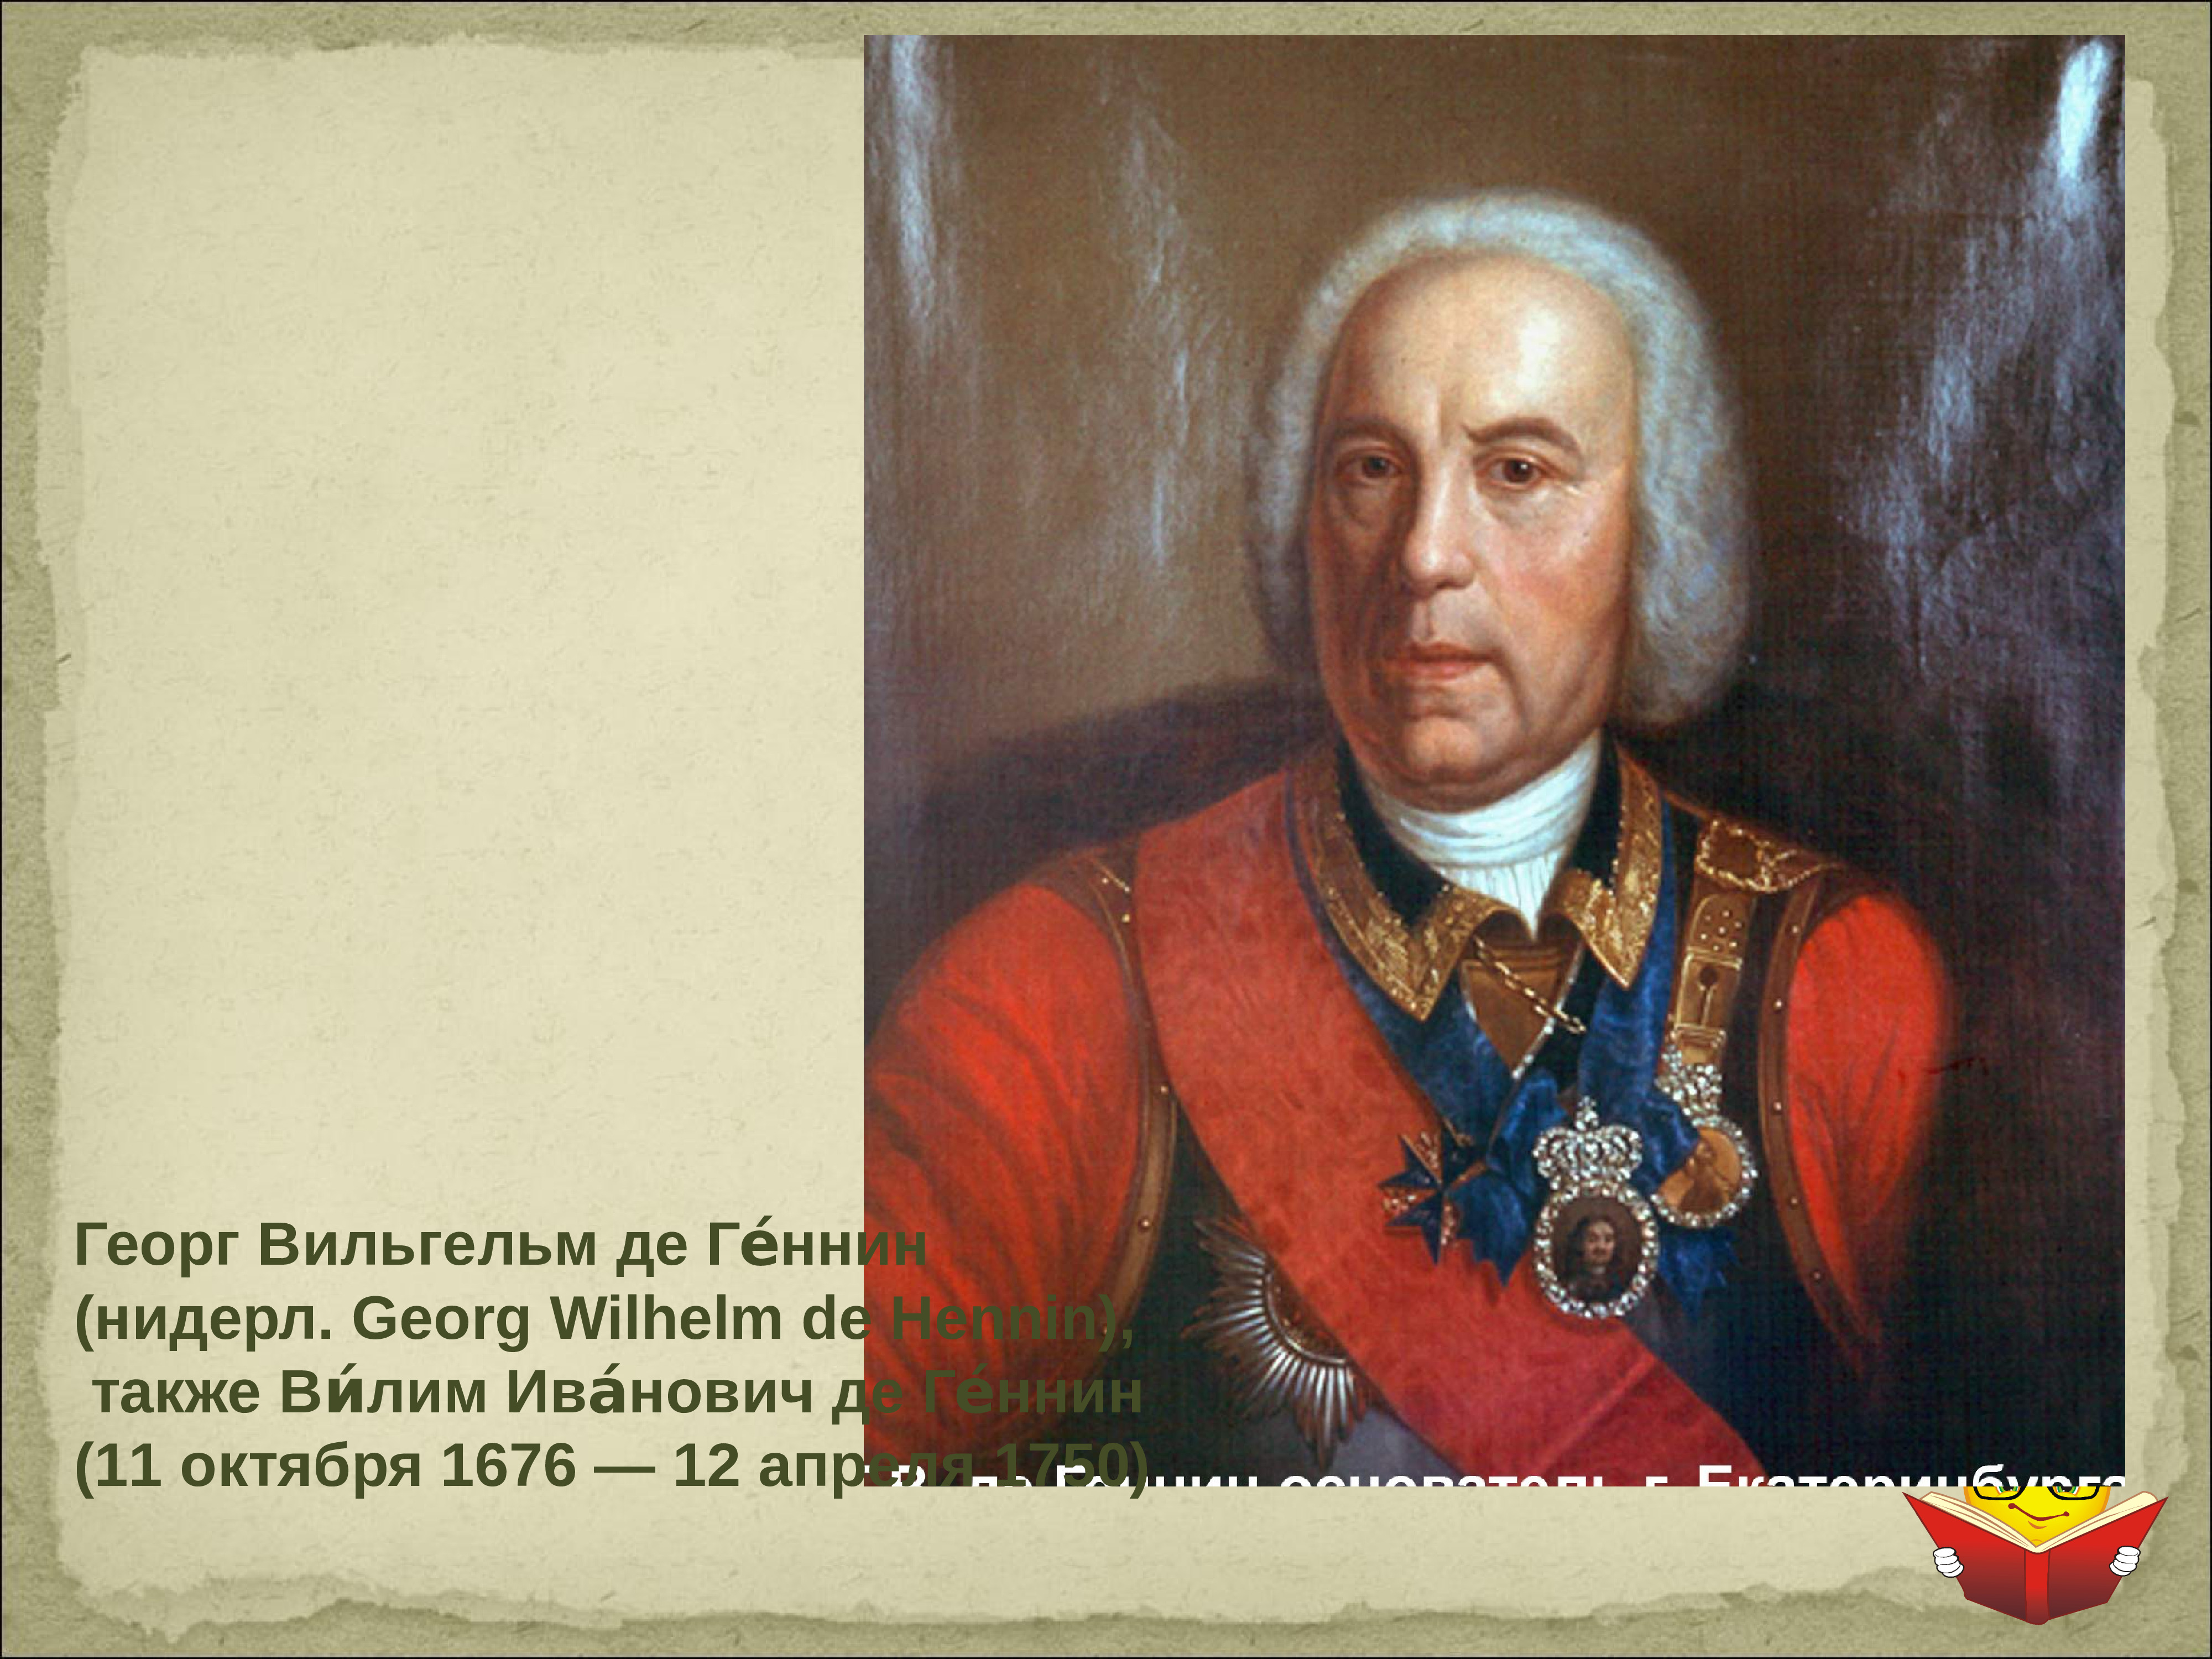 Де генин слово информация. Геннин Виллим Иванович. Геннин Виллим Иванович 1676-1750.